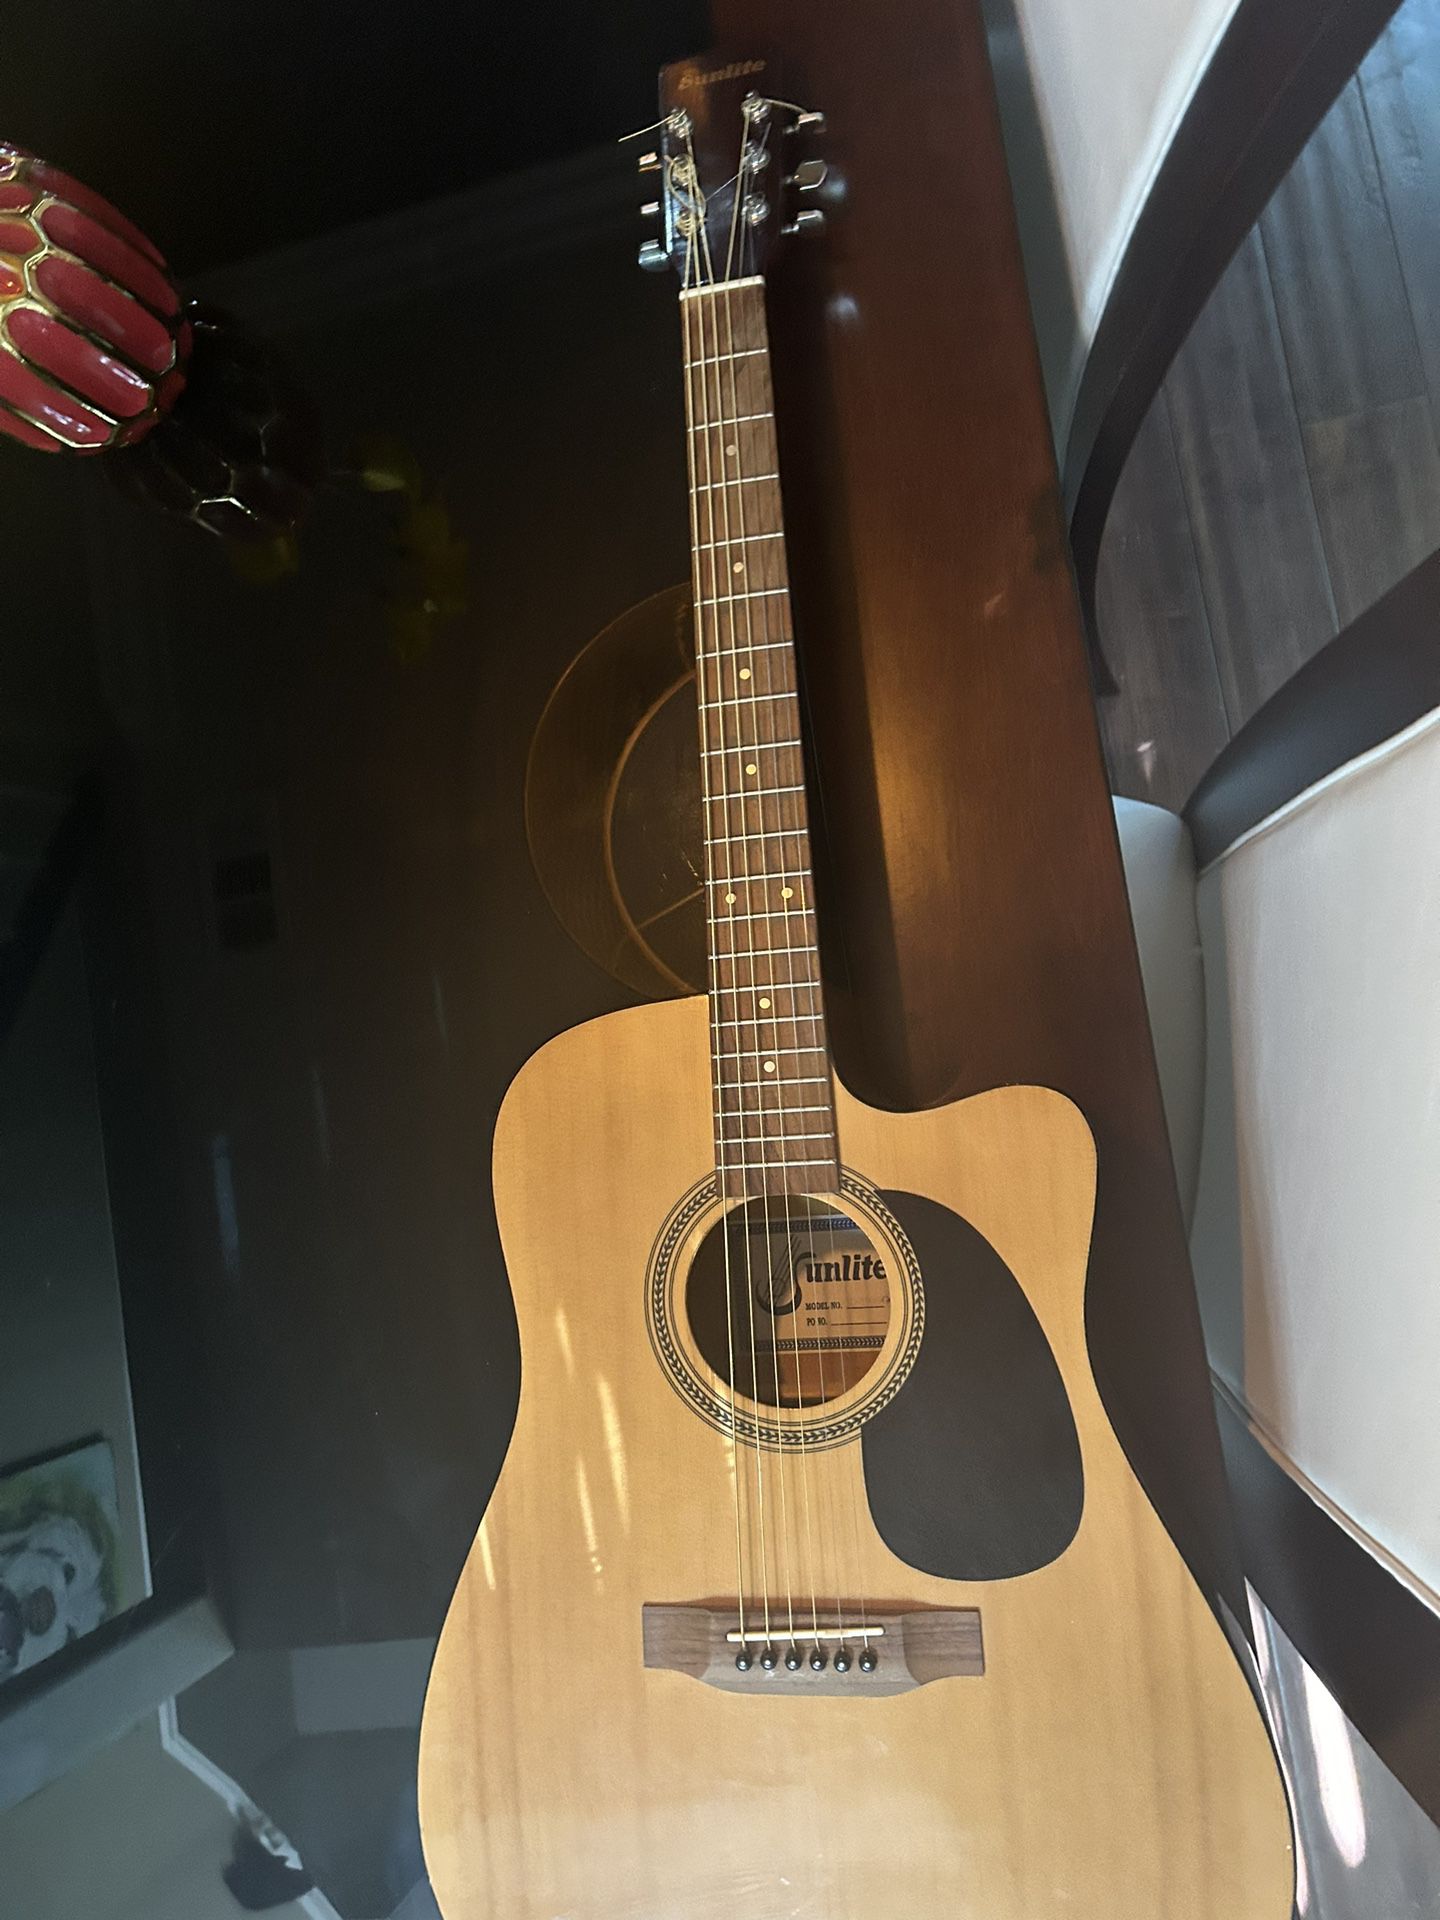 SUNLITE Full Sized Acoustic Guitar Cutaway.  